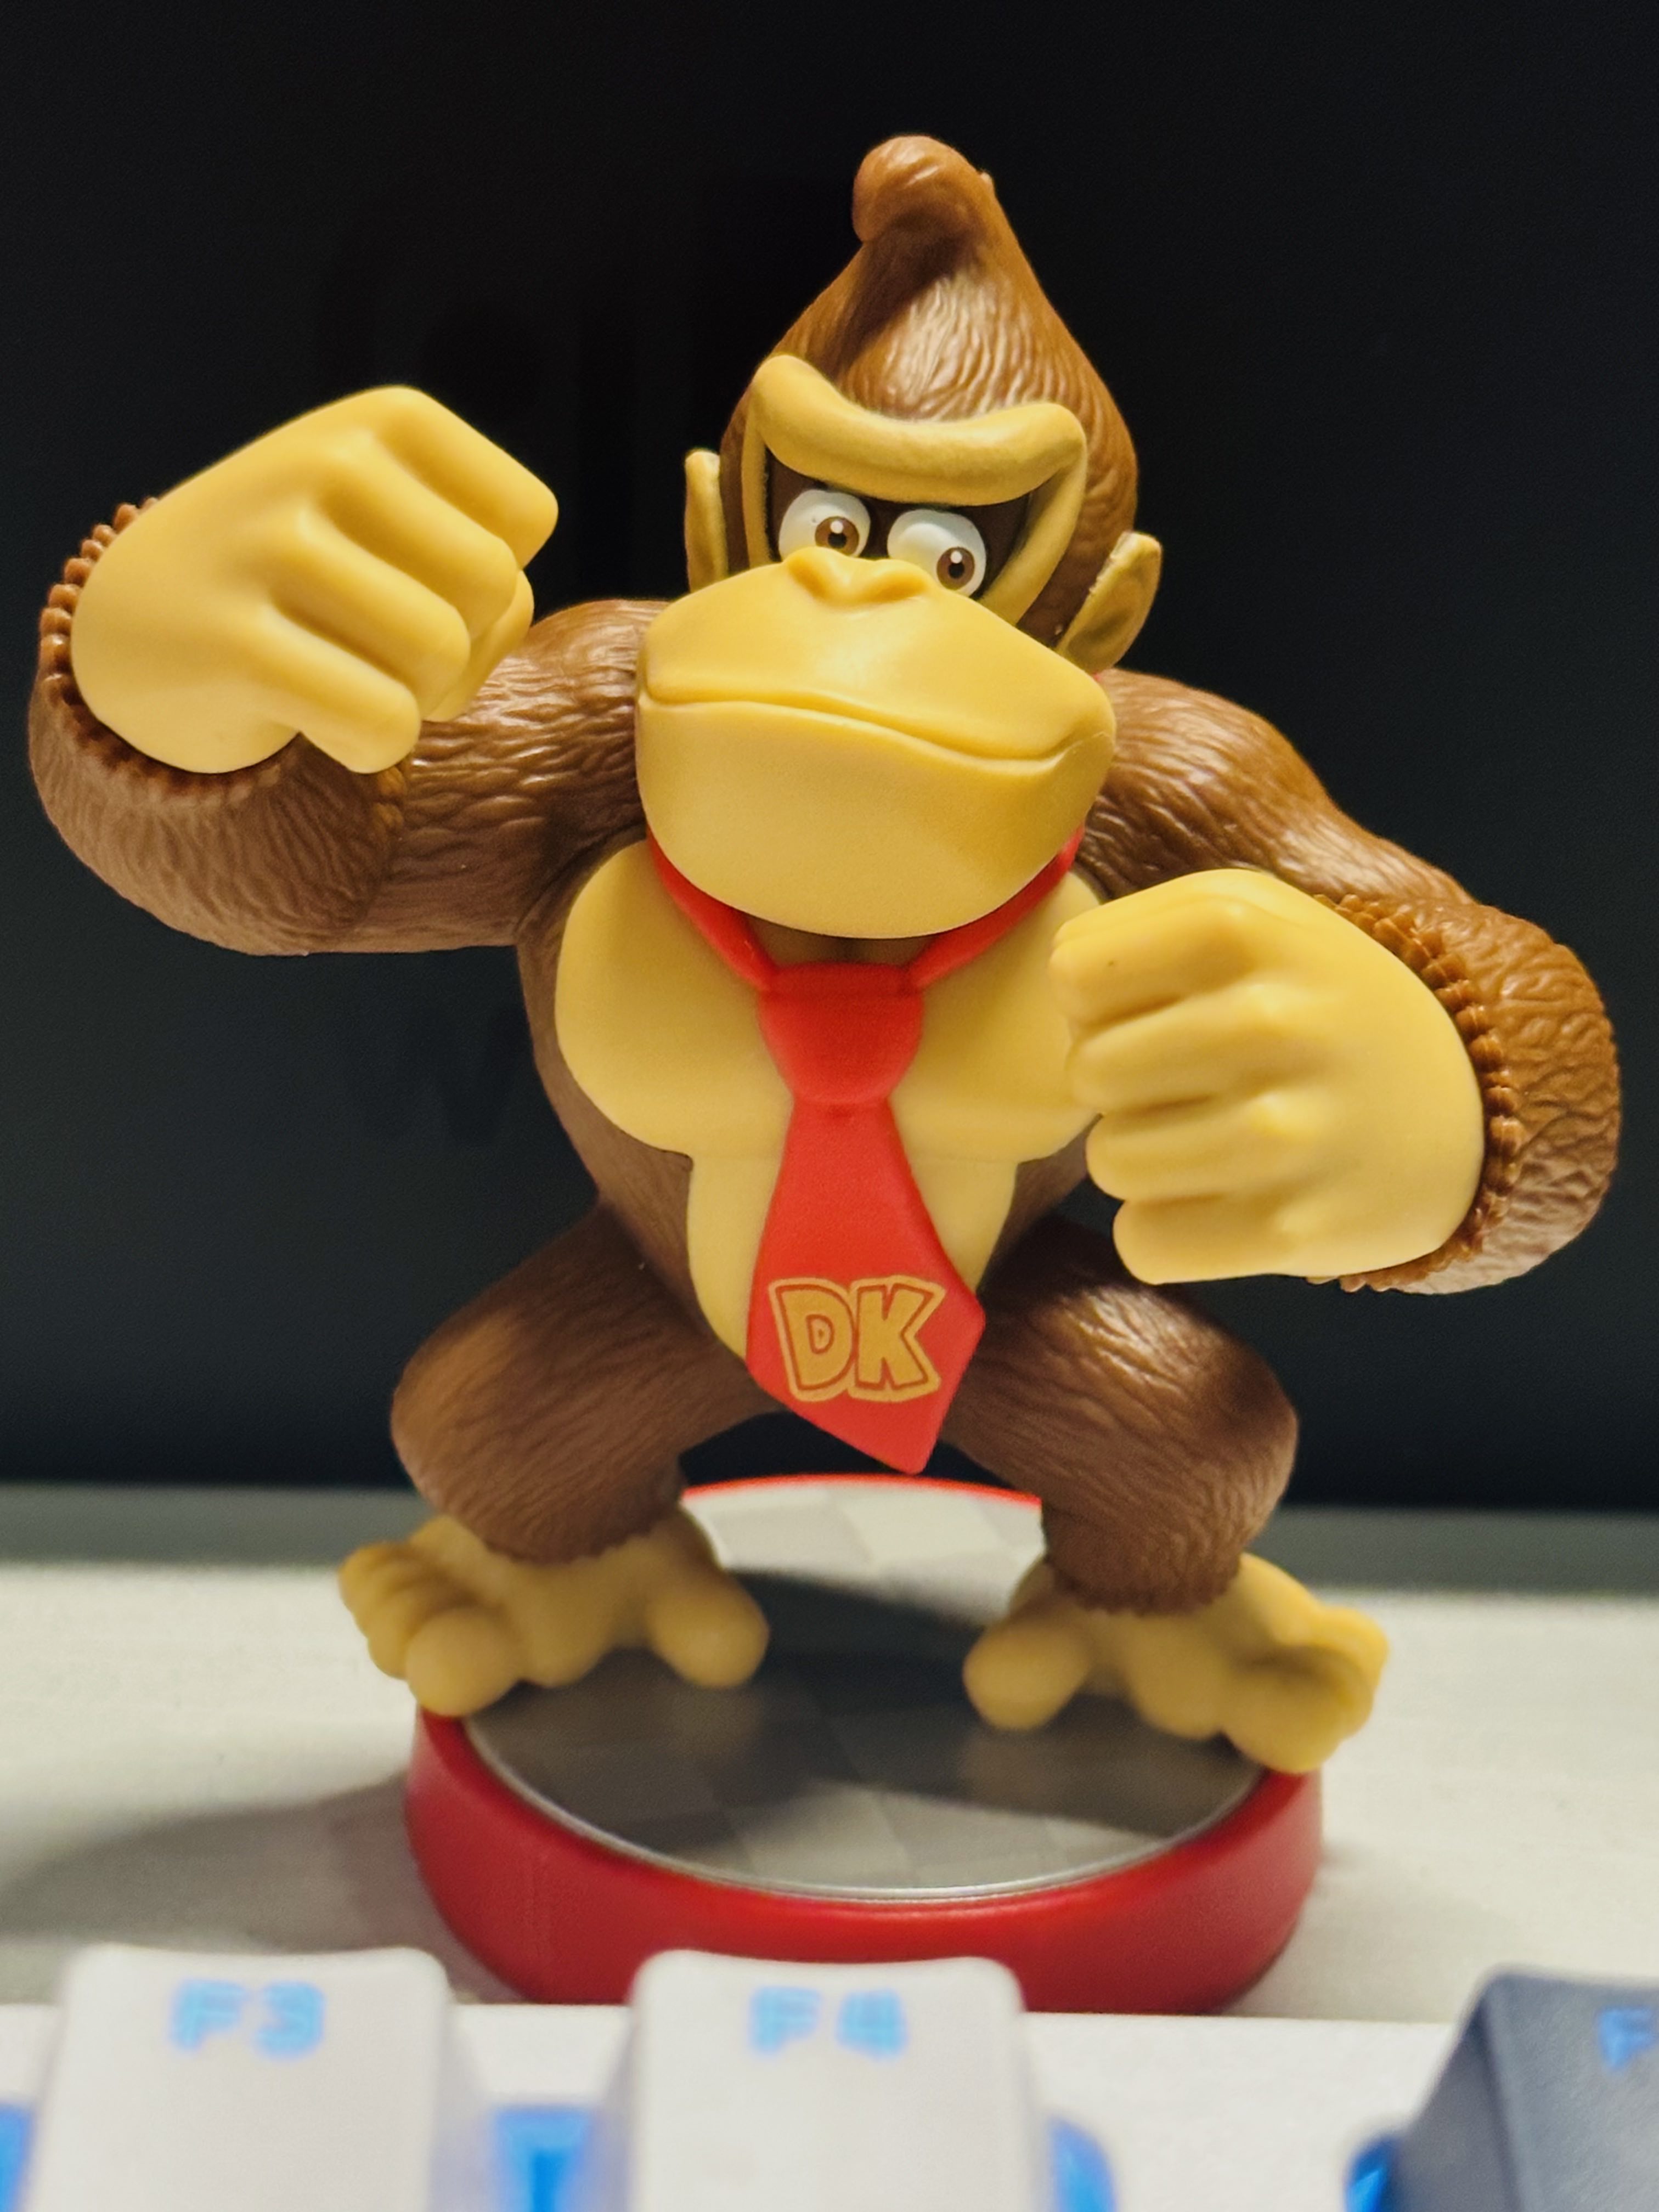 Nintendo amiibo Donkey Kong - Super Mario Collection 